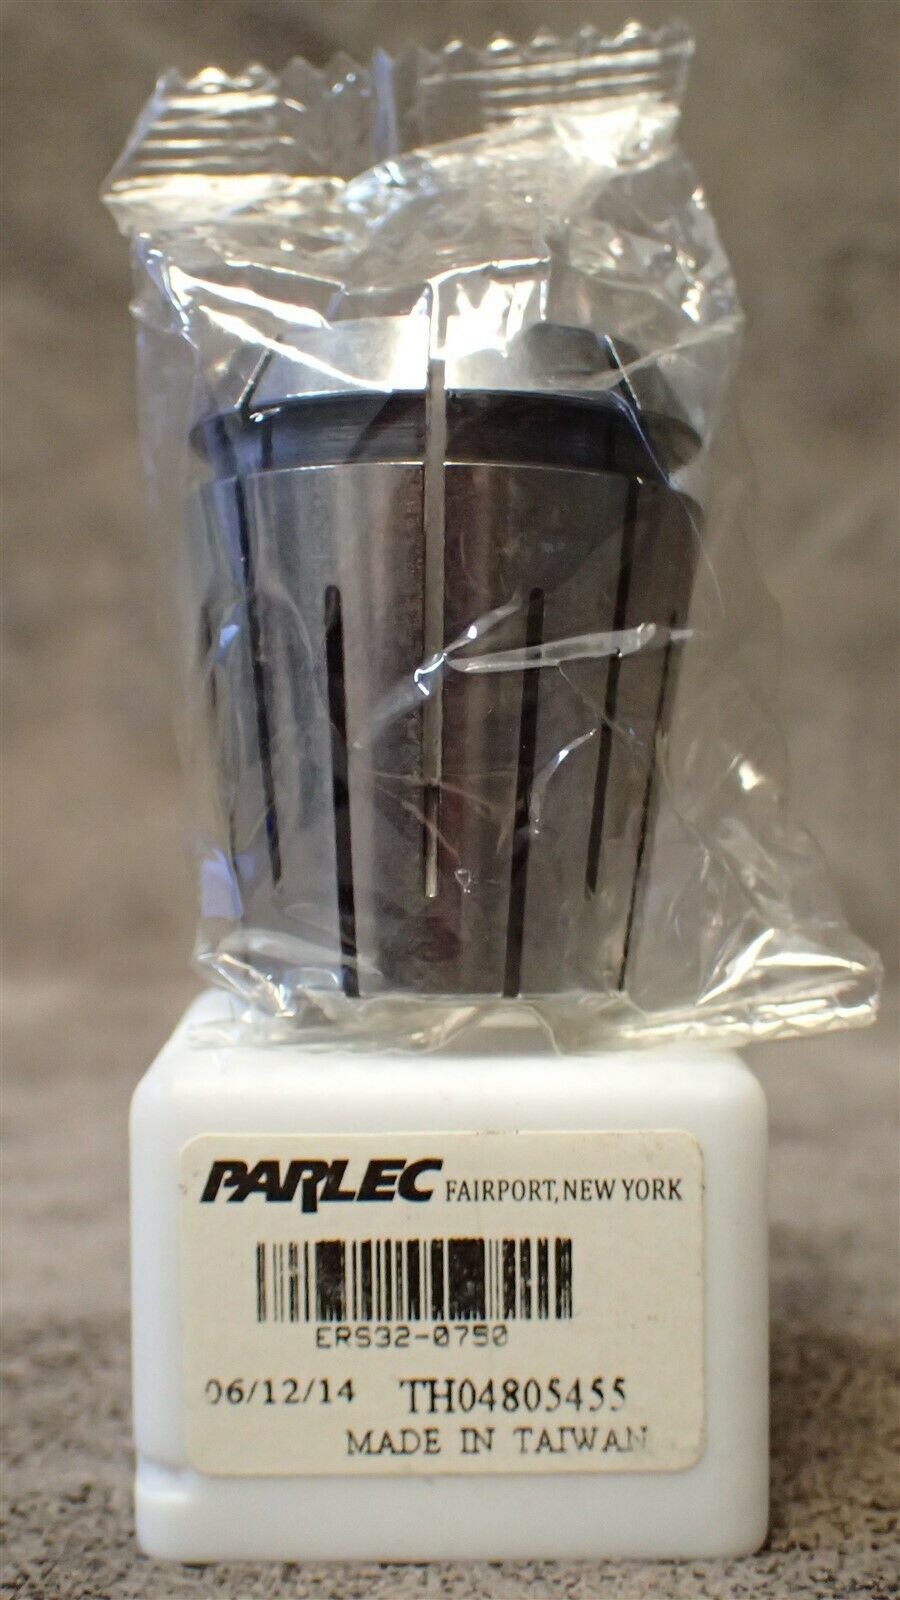 Ers32-0750 Parlec 0.750" Standard Grade Steel Sealed Coolant Collet, 1.574" Oal